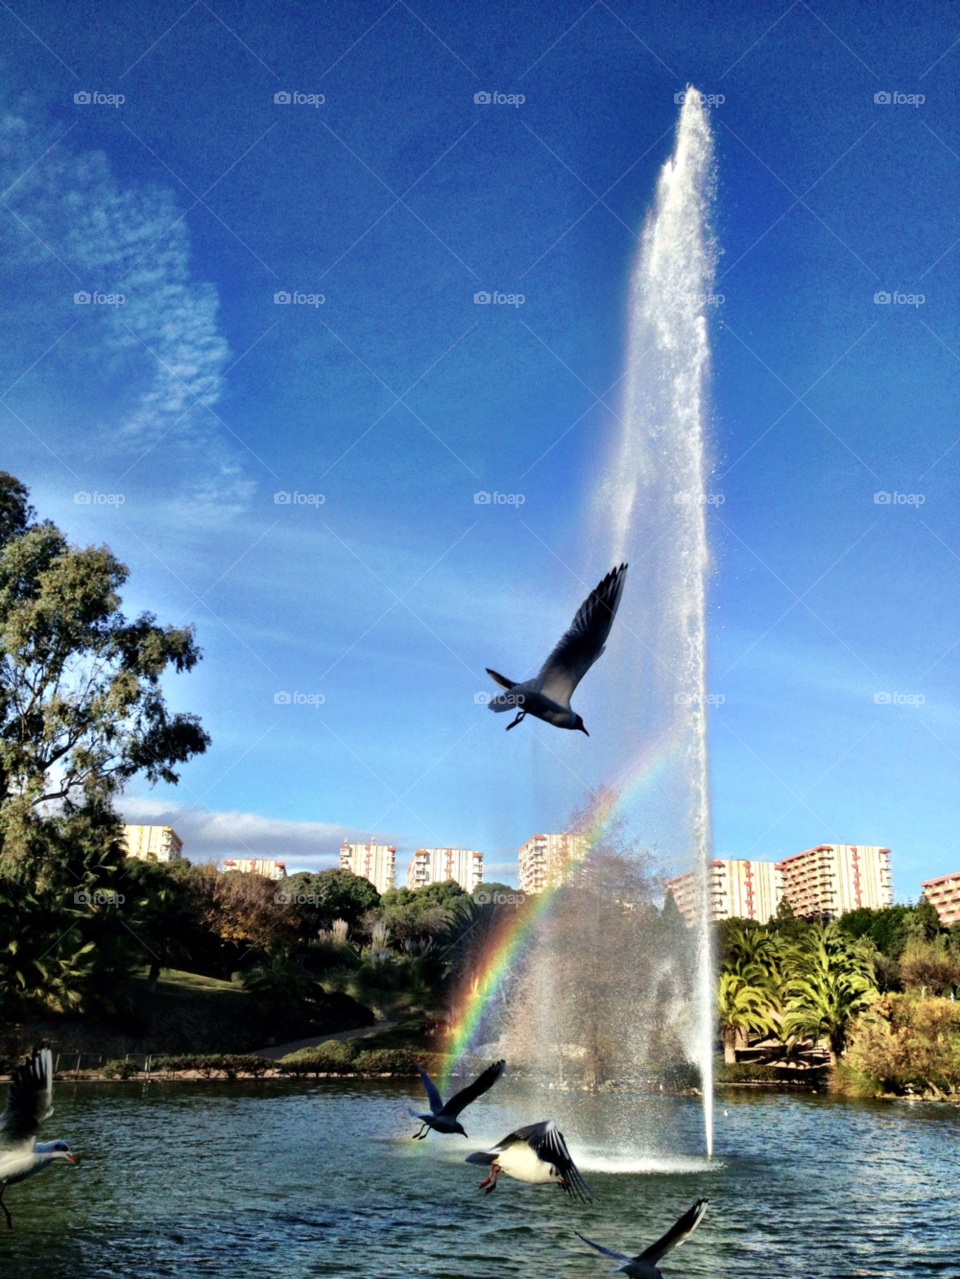 lake park rainbow fountain by stevephot